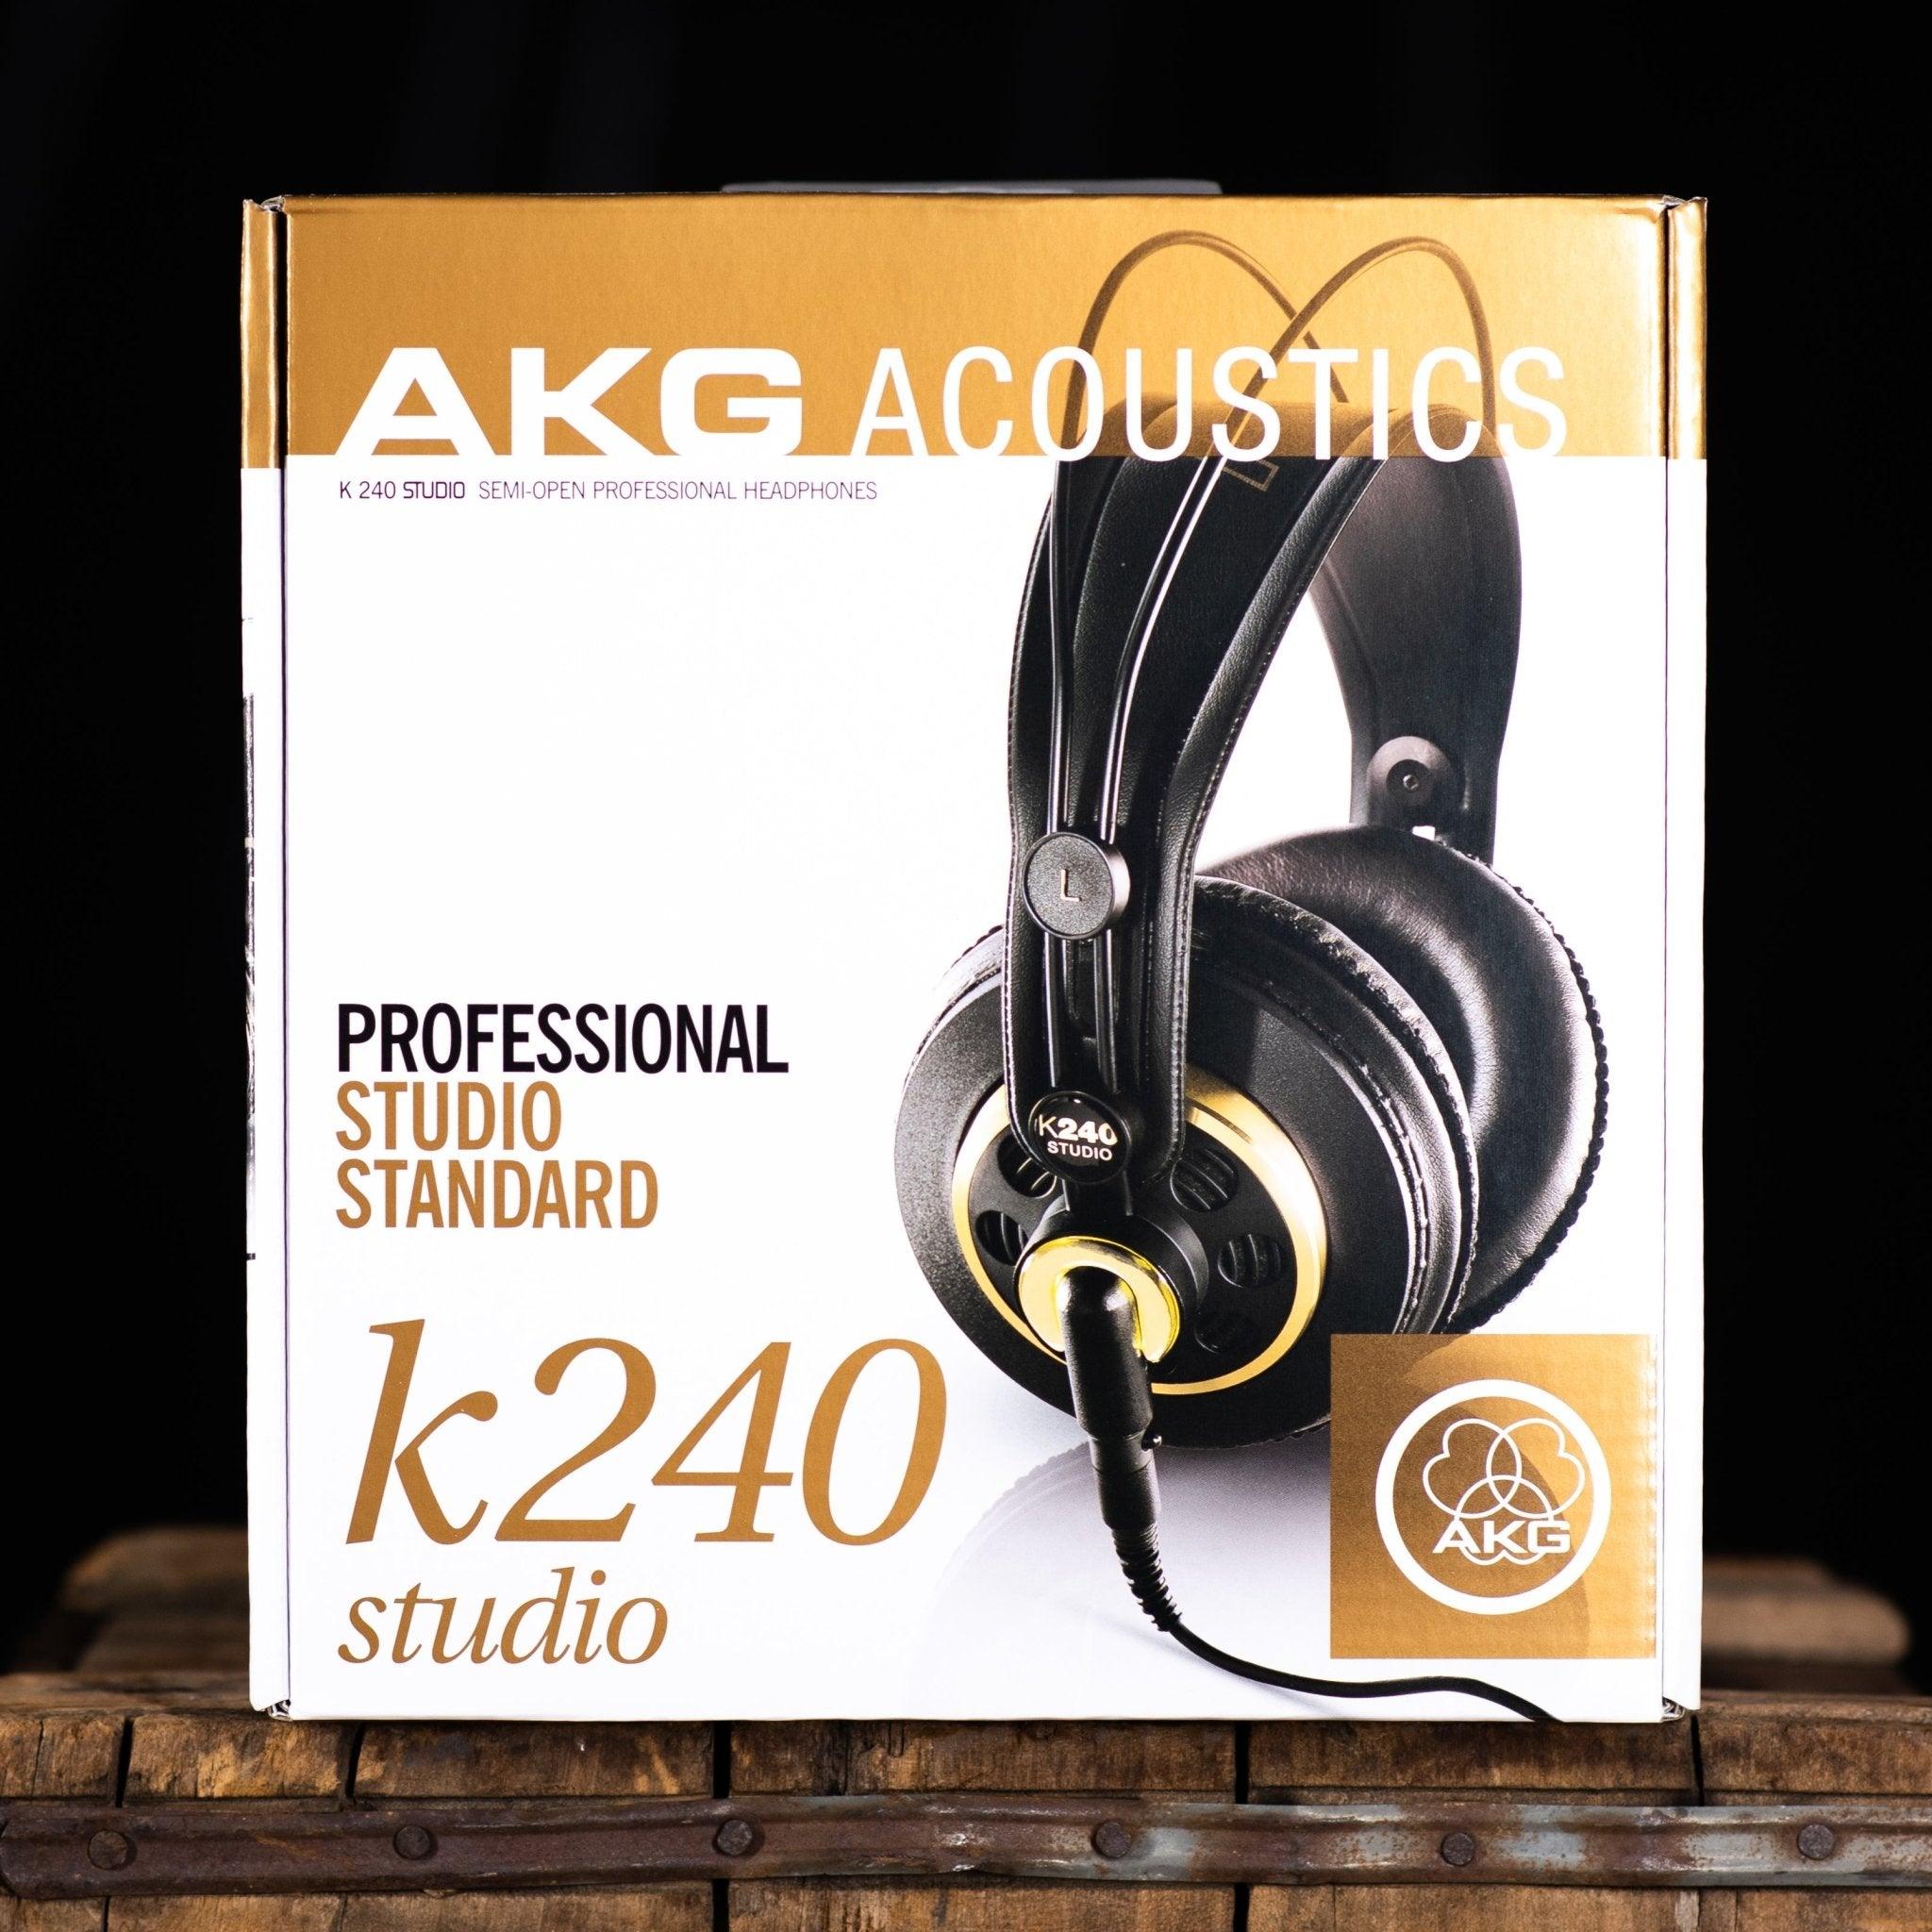 AKG K240 Studio Auriculares profesionales de estudio con envío gratuito -  Impulse Music Co.